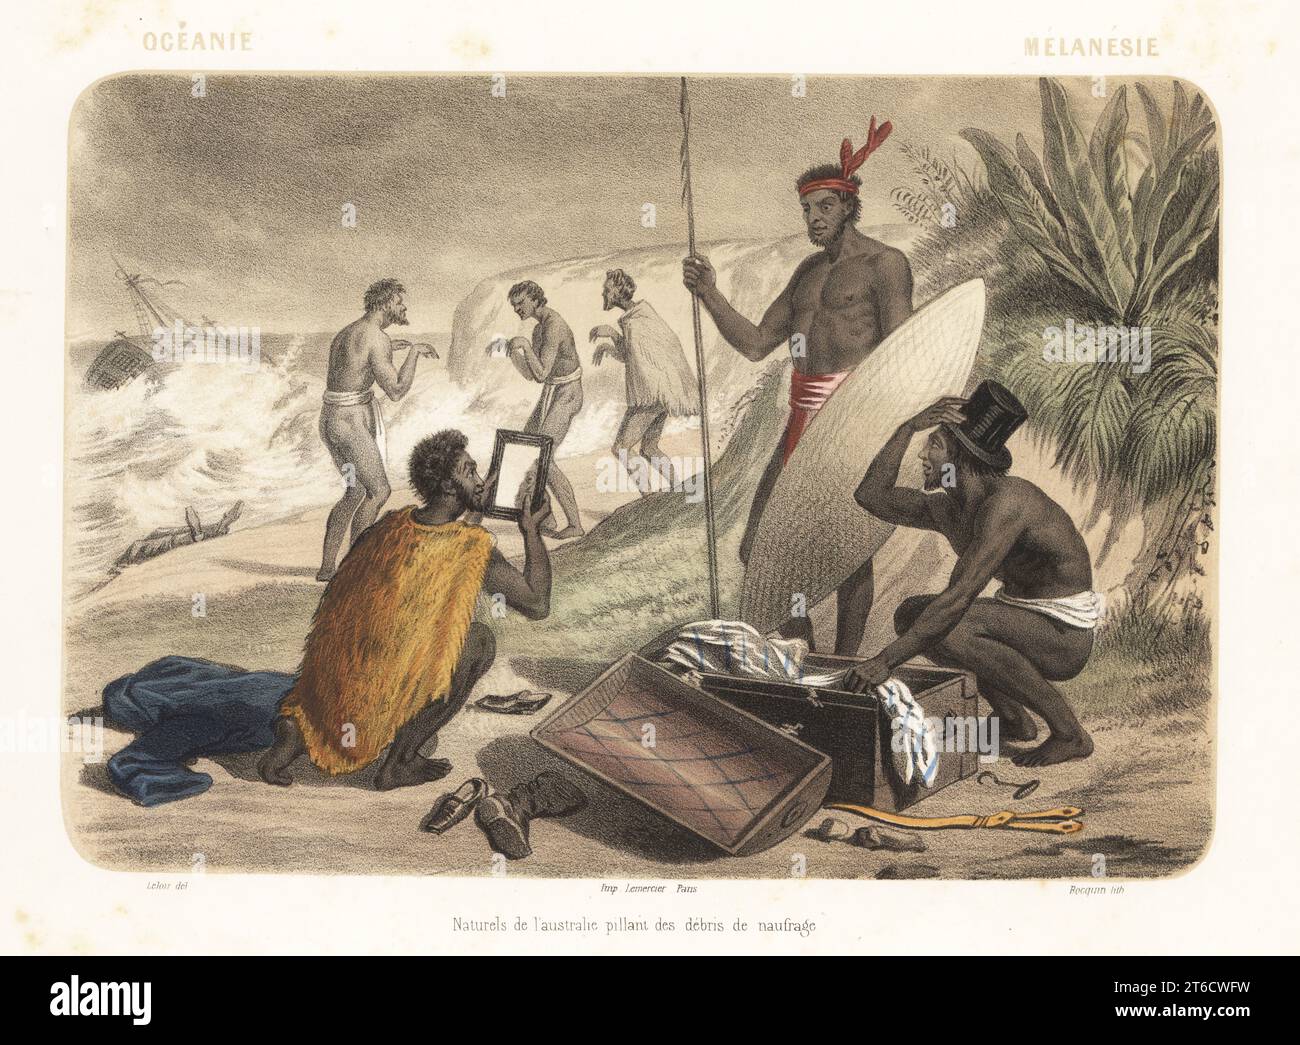 Costumi di Australia, Oceania, 1858. Uomini aborigeni che esaminano flotsam da un naufragio europeo su una spiaggia. Nei lincloti e nei mantelli, armati di lancia e scudo, reggono un cappello e uno specchio. Naturels de l'Australie pillant des debris de naufrage. Litografia colorata a mano e tinta seppia di Jean-Adolphe Bocquin dopo un'illustrazione di Auguste Leloir di Elisabeth Muller (pseudonimo di Leonie Bedelet)s le Monde en Estampes, The World in Prints, Amadee Bedelet, Parigi, 1858. Foto Stock